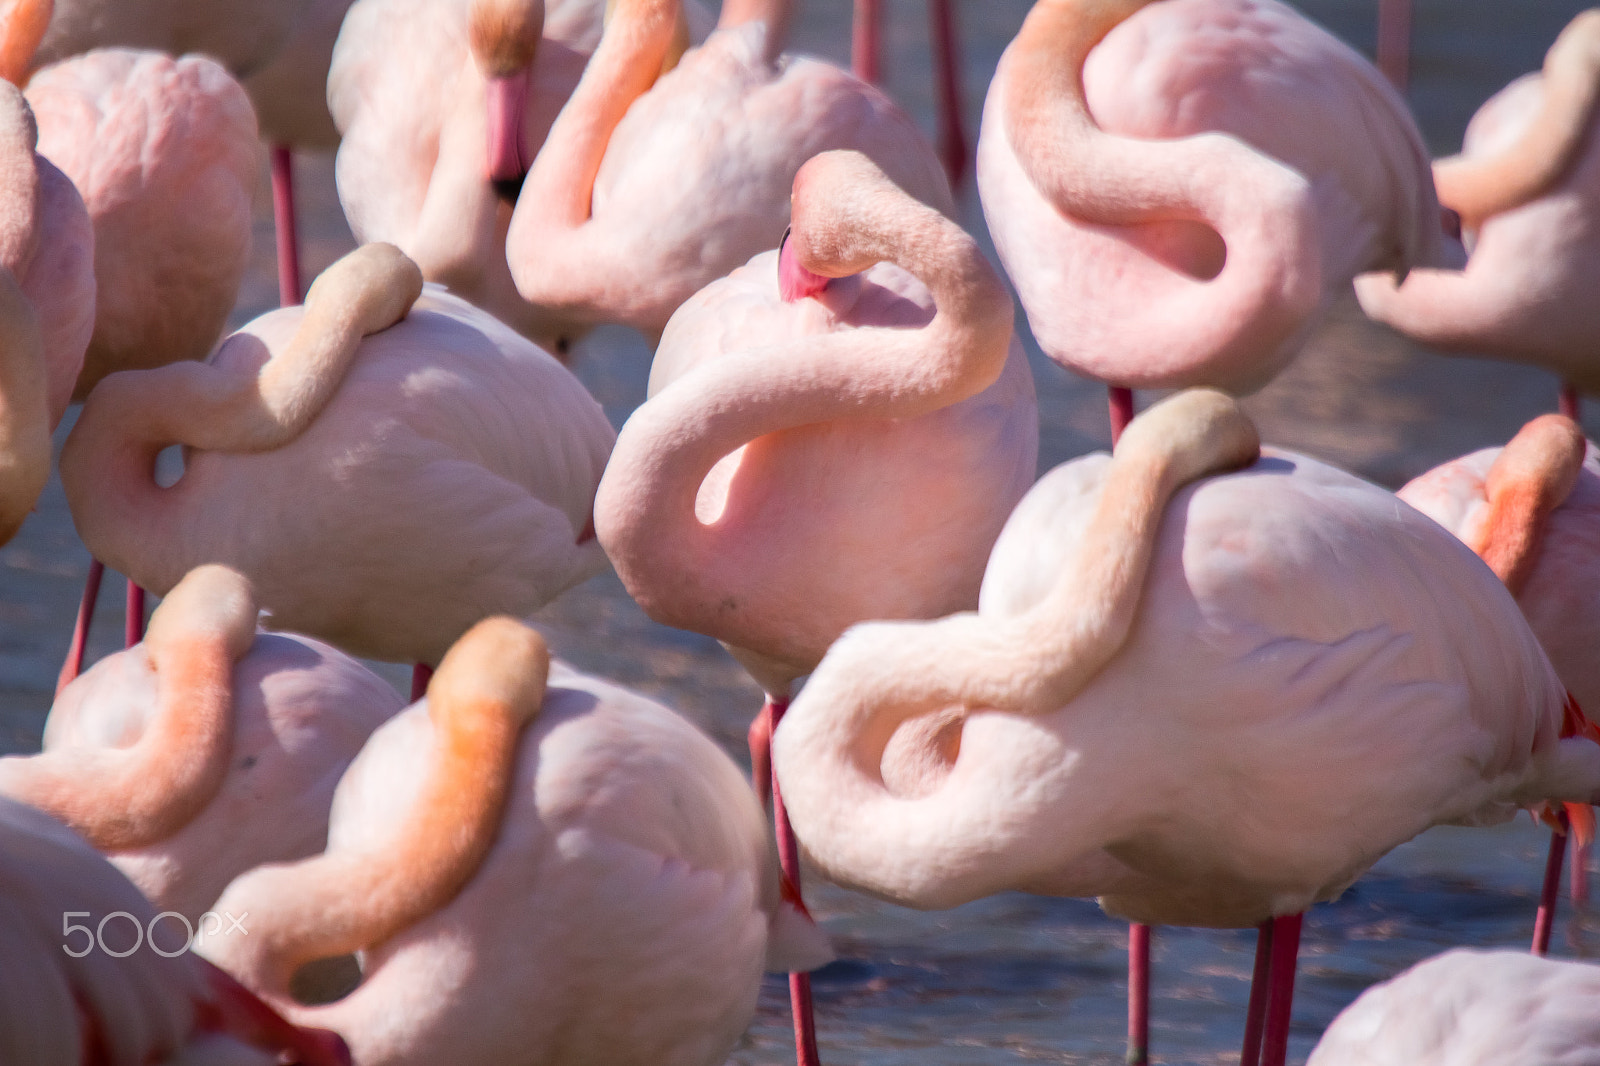 Canon EOS 60D sample photo. Pink flamingos sleeping photography